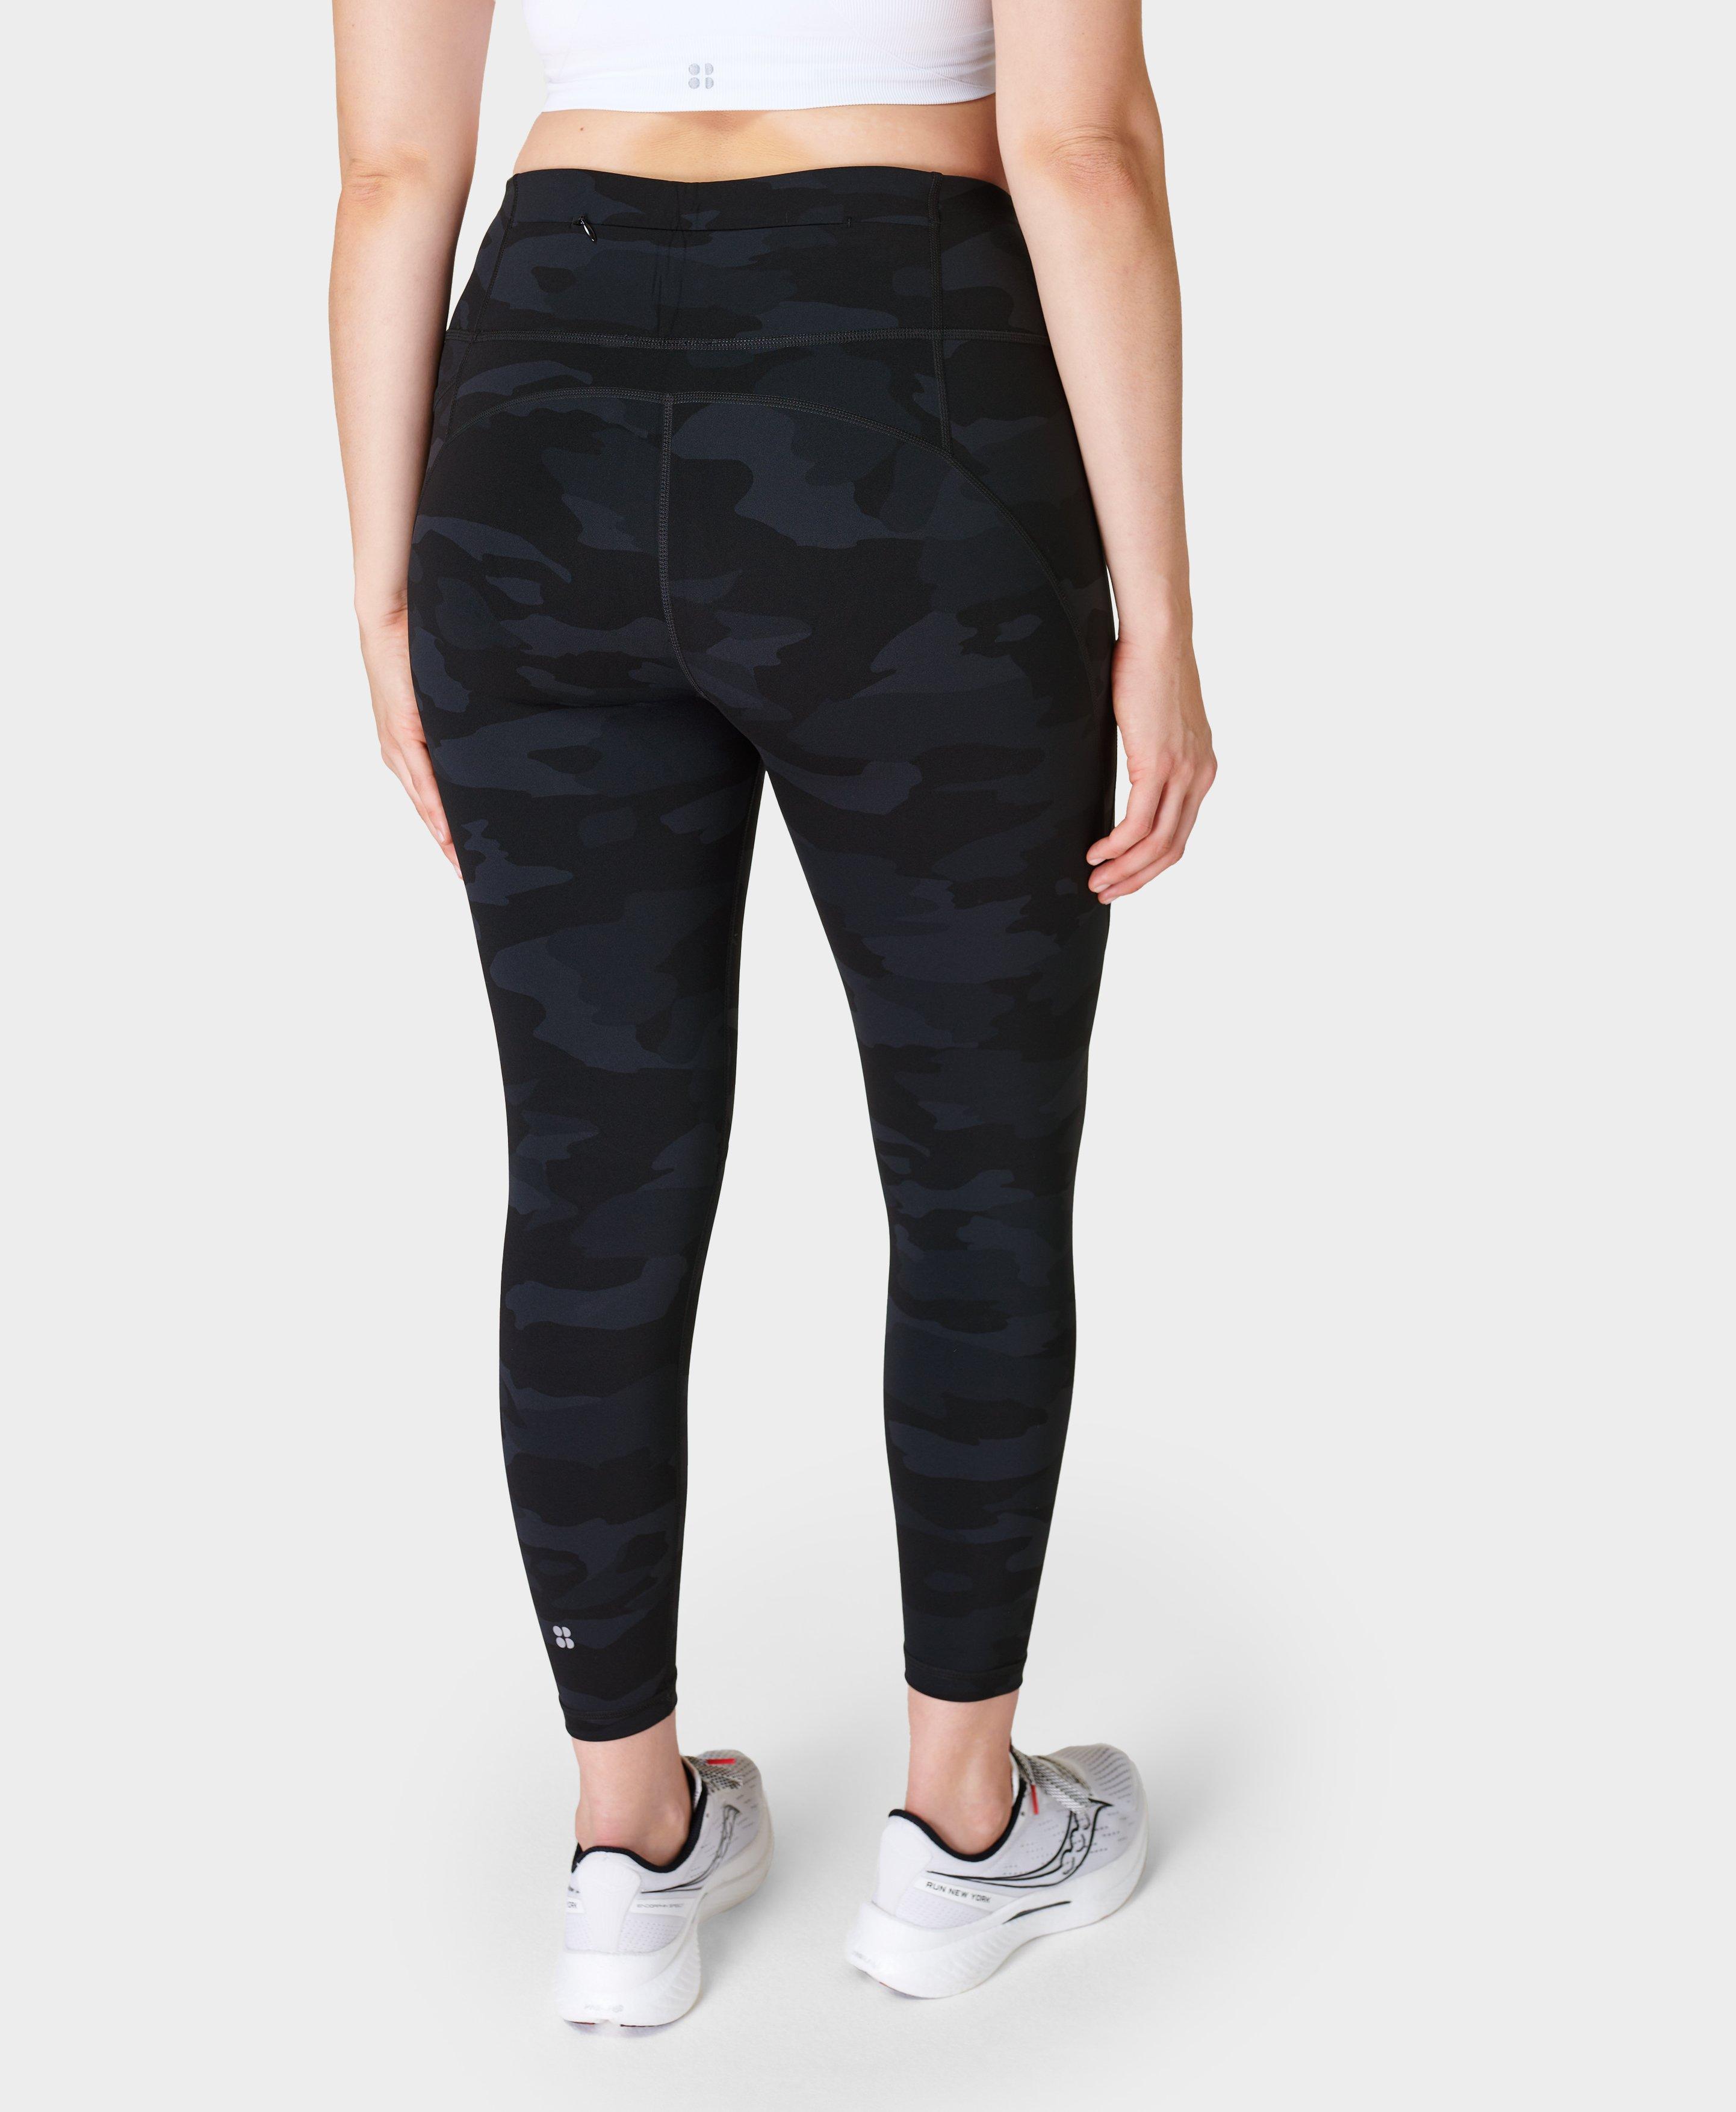 Solid Color Black Pants No Panties Lady Workout Pants 3D Print